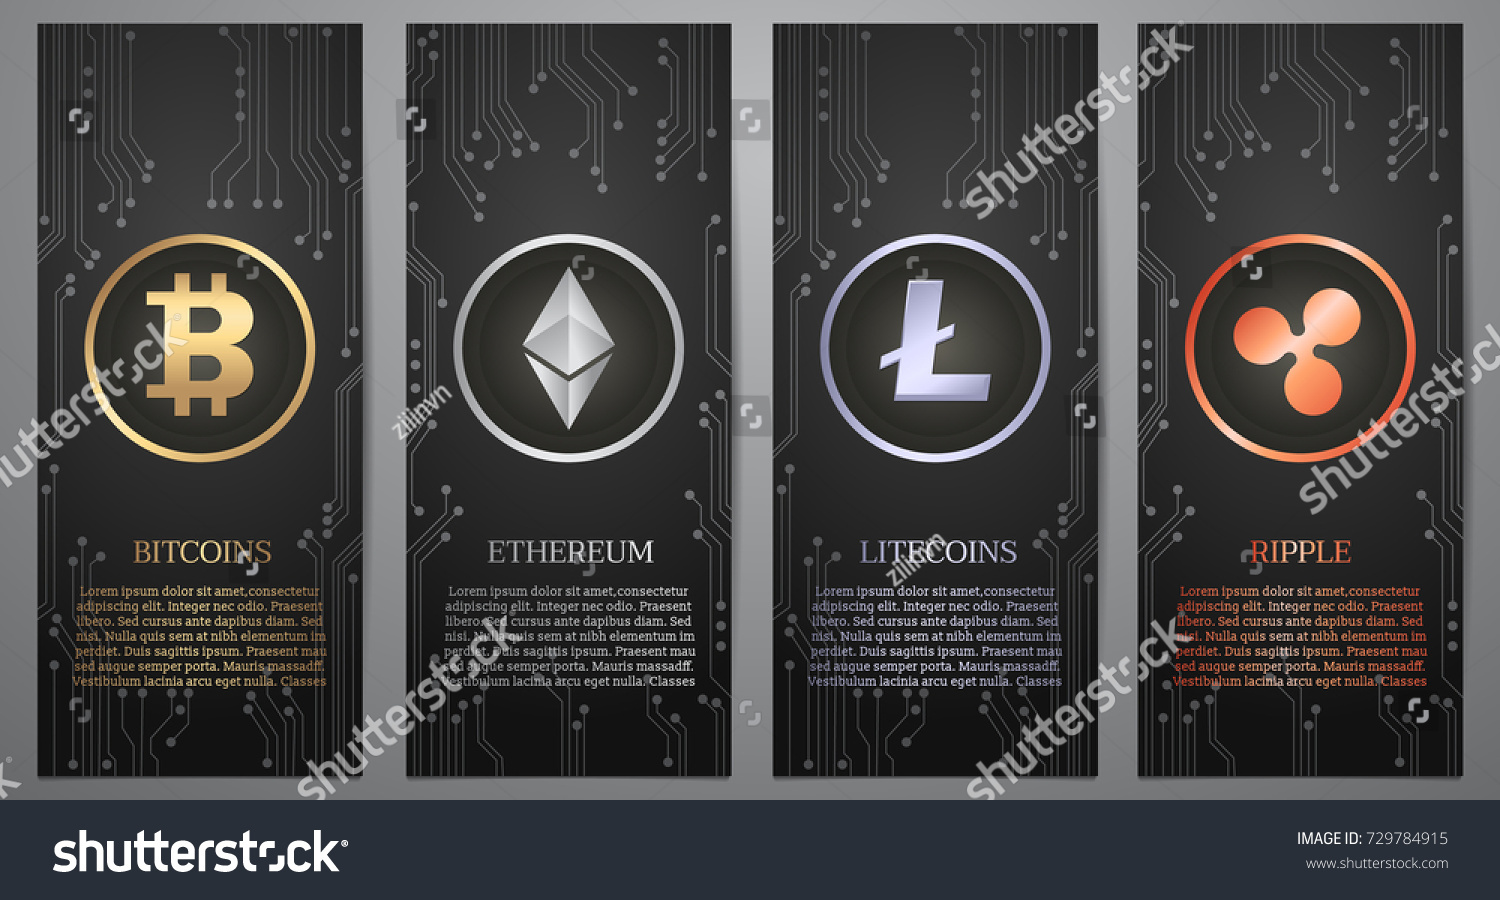 SVG of Cryptocurrency symbol on the black banner, Vector illustration. svg